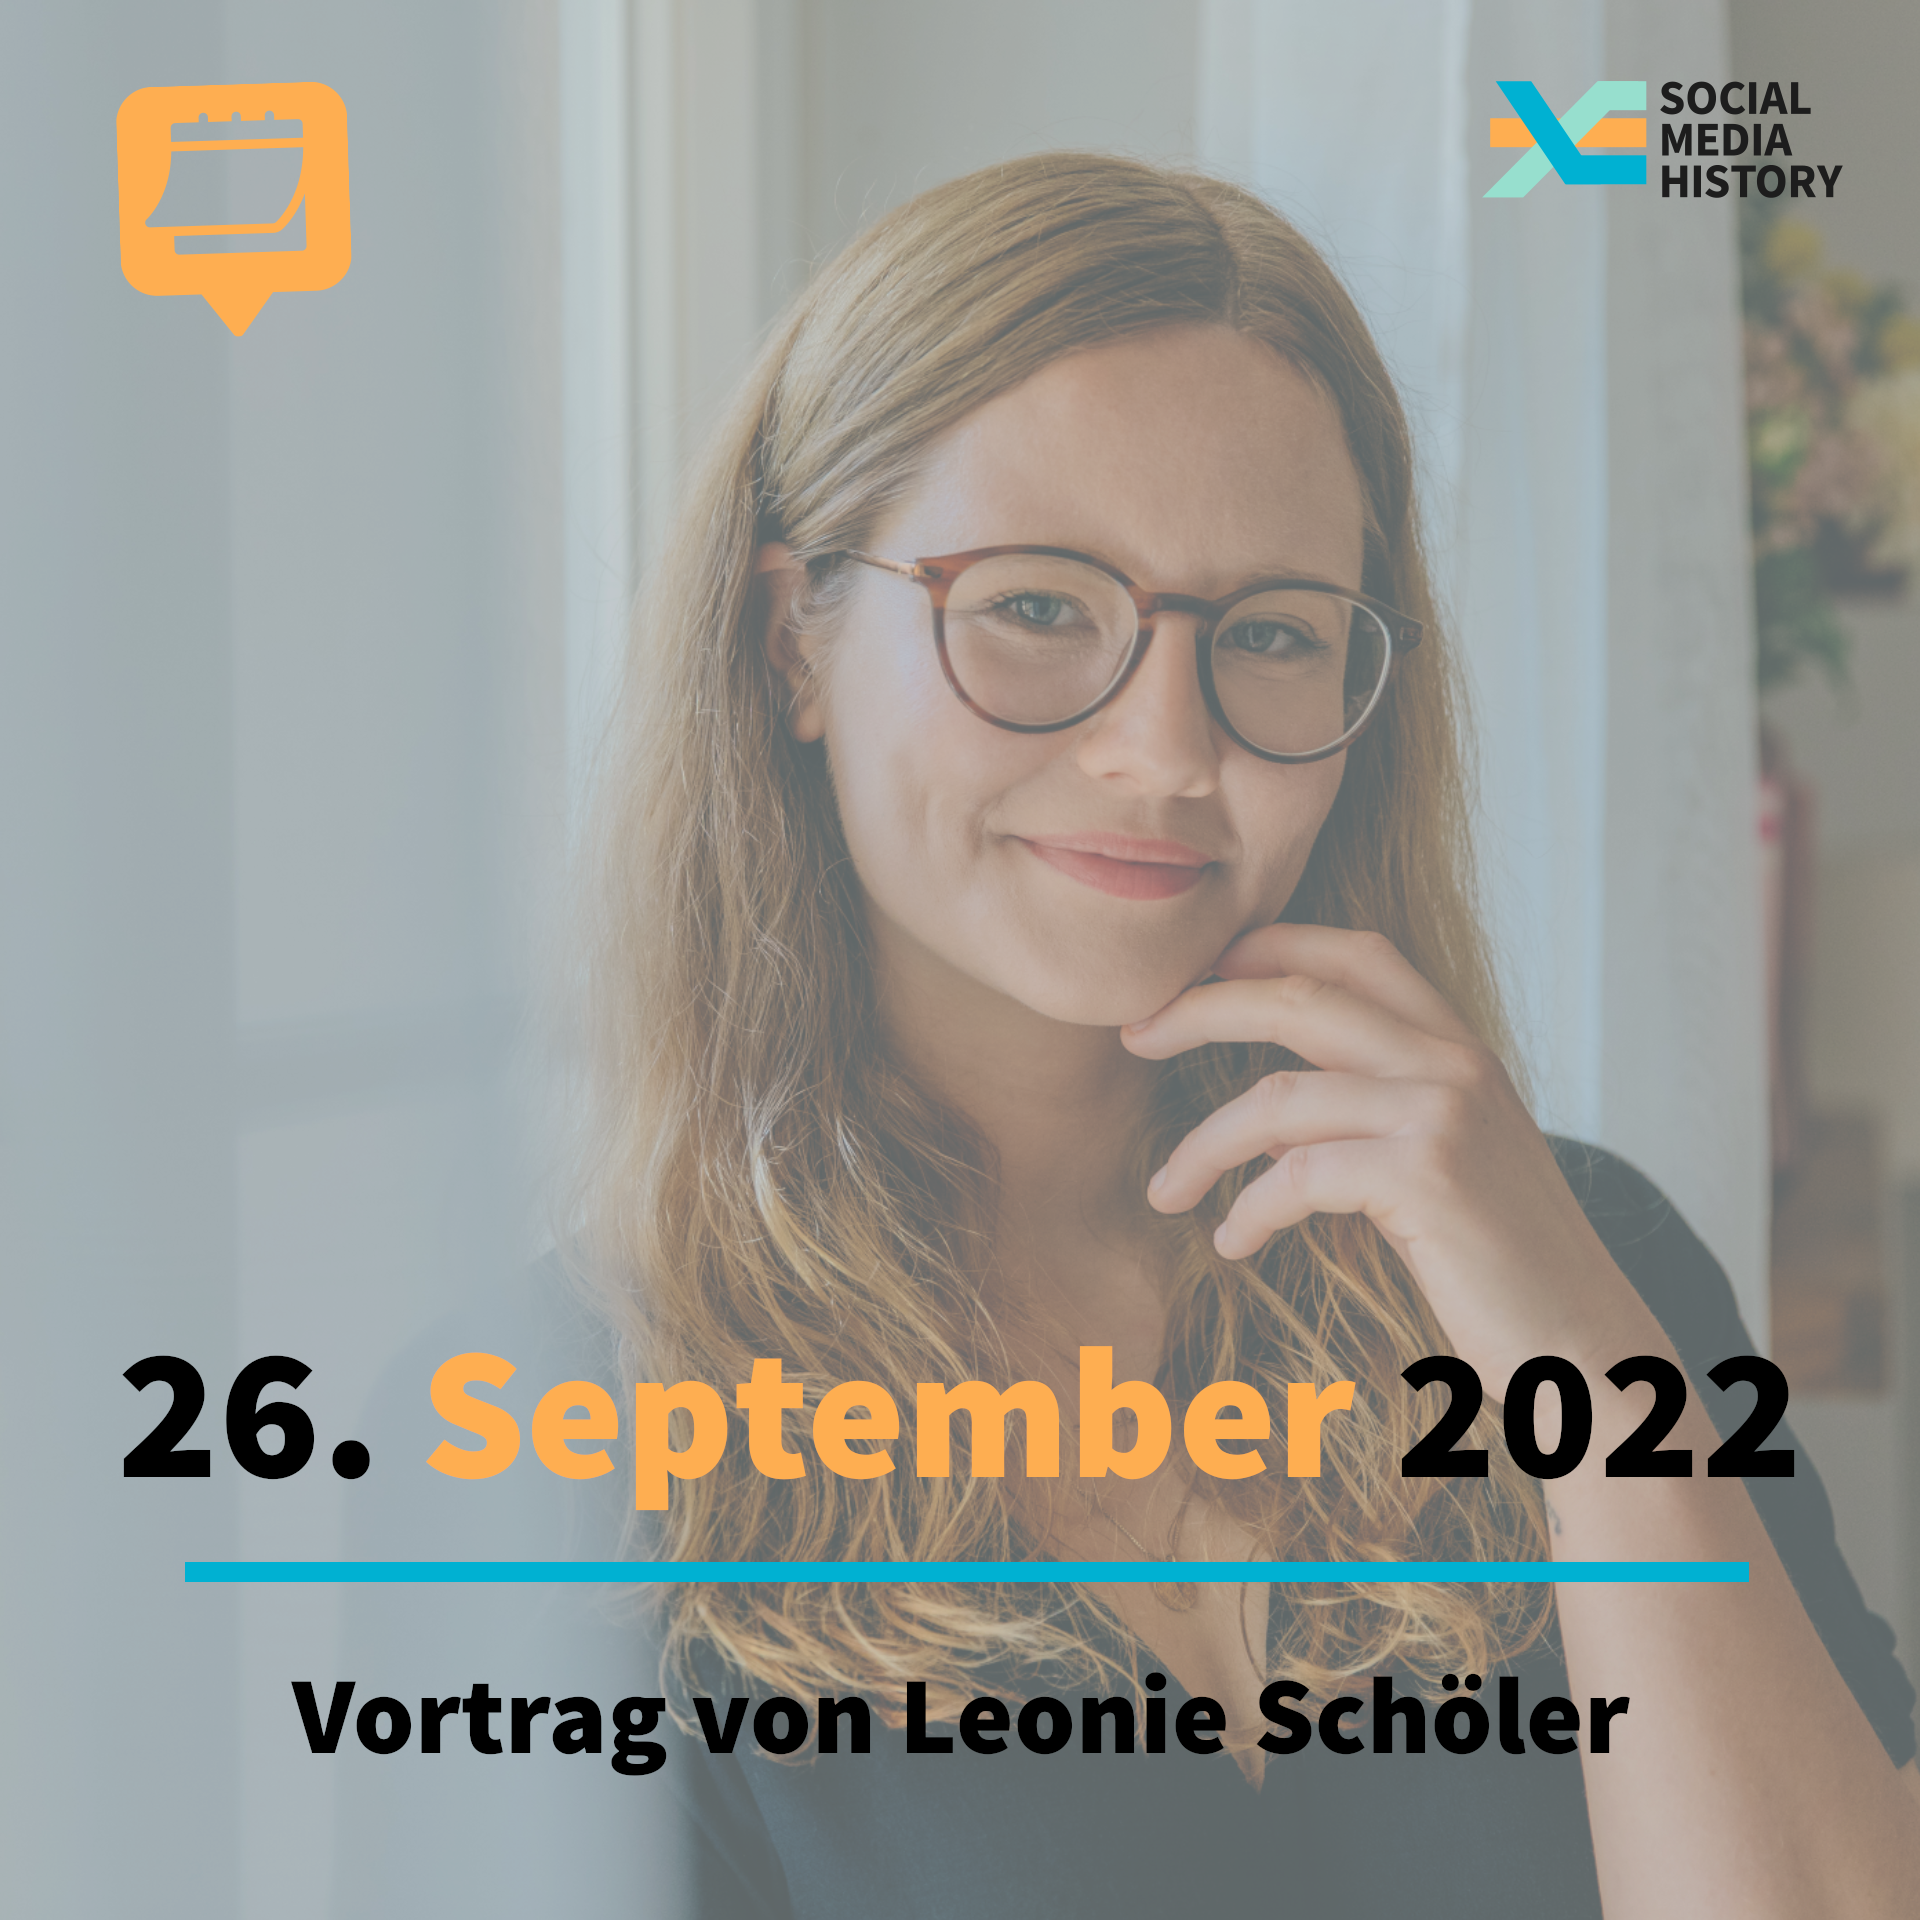 Portrait Leonie Schöller. Als Unterschrift über dem Bild: Ankündigung Vortrag Leonie Schöller, am 26. September 2022